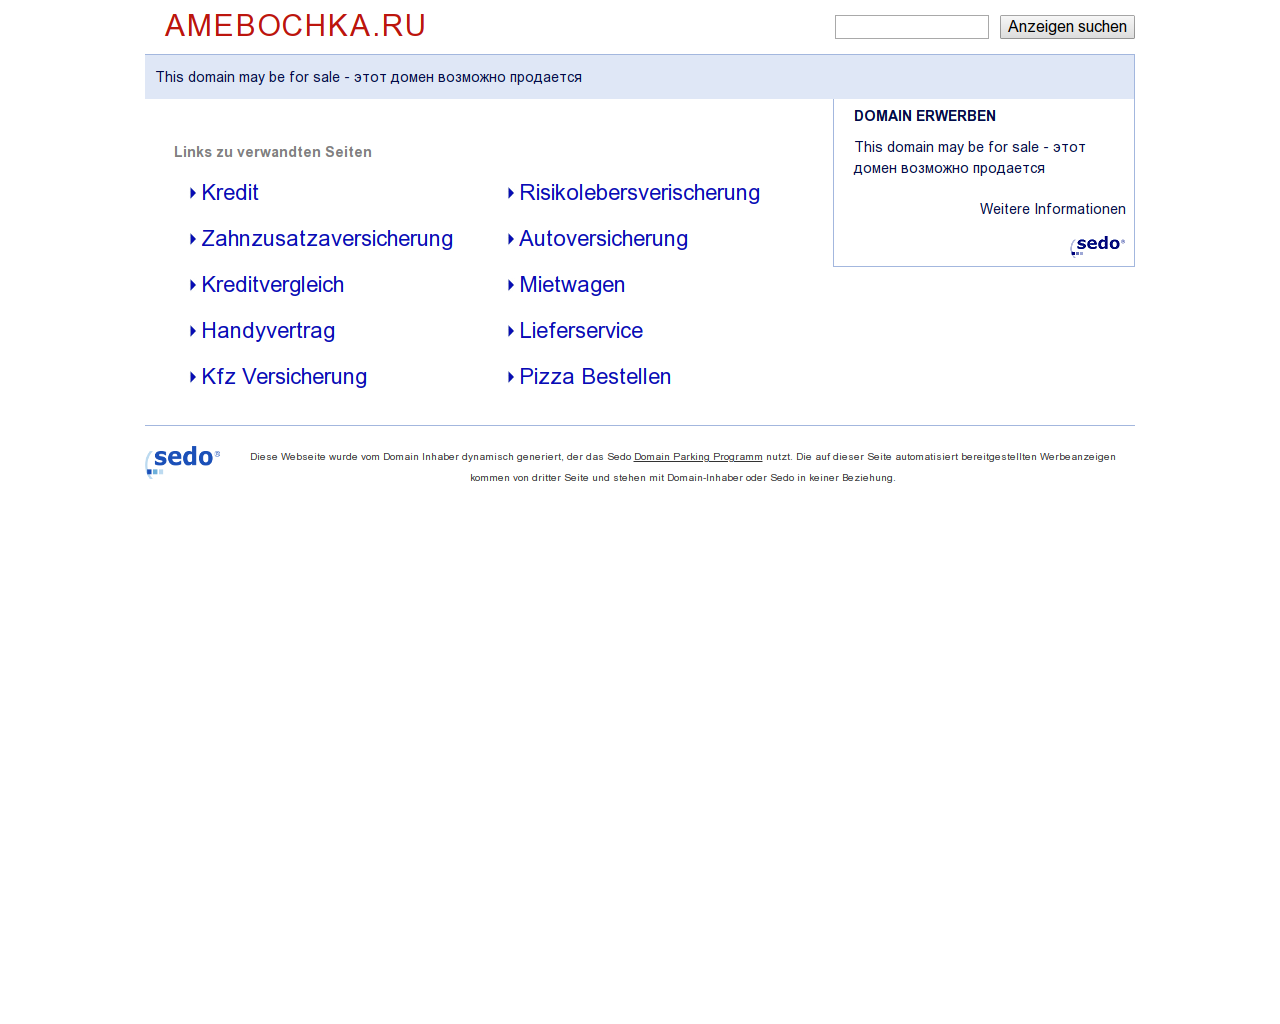 Изображение сайта amebochka.ru в разрешении 1280x1024